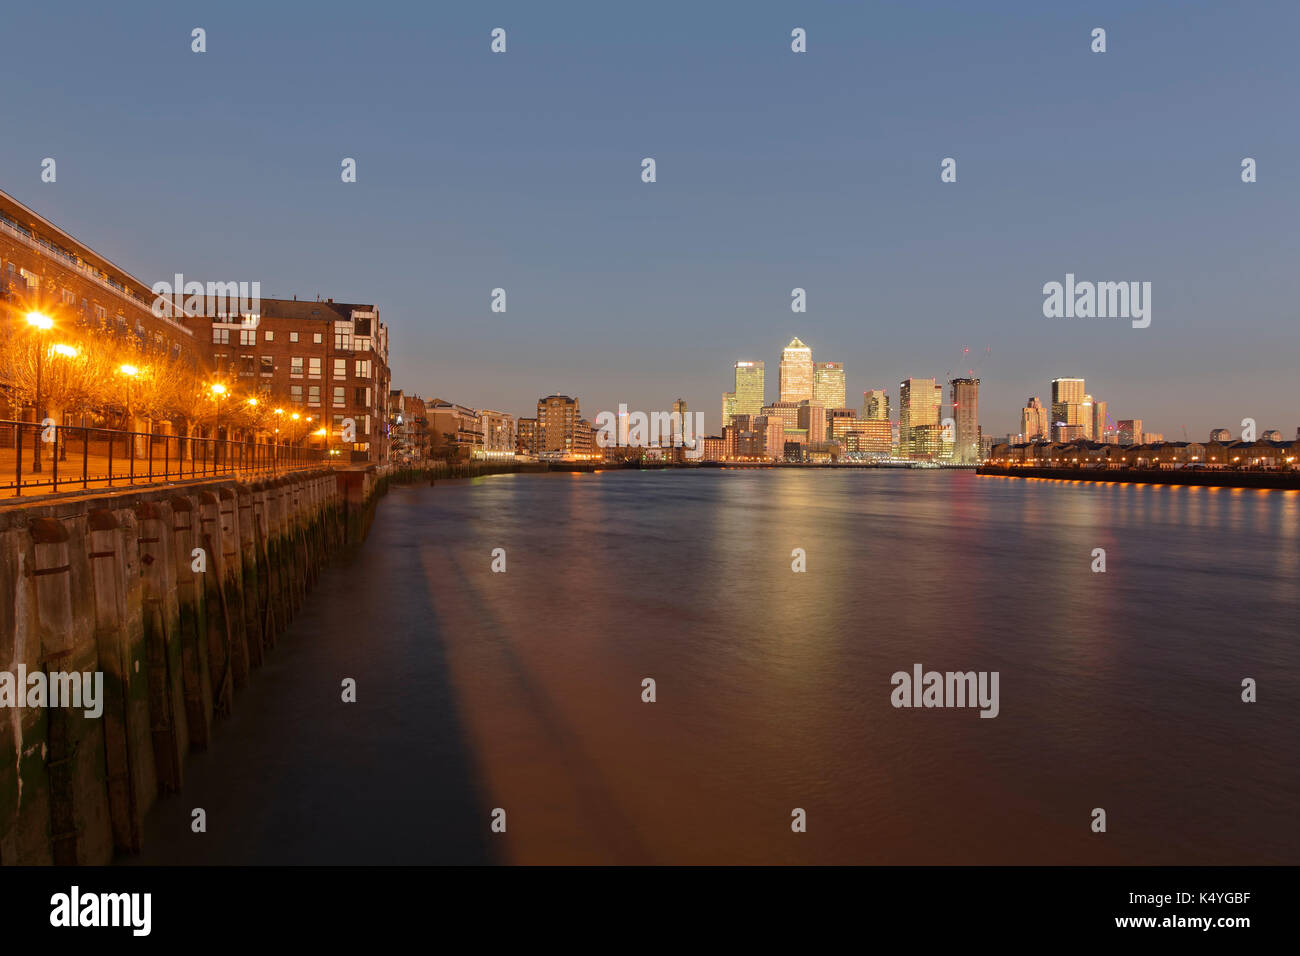 Vista de canary wharf y del distrito financiero de Thames, isla de perro, London, England, Reino Unido Foto de stock